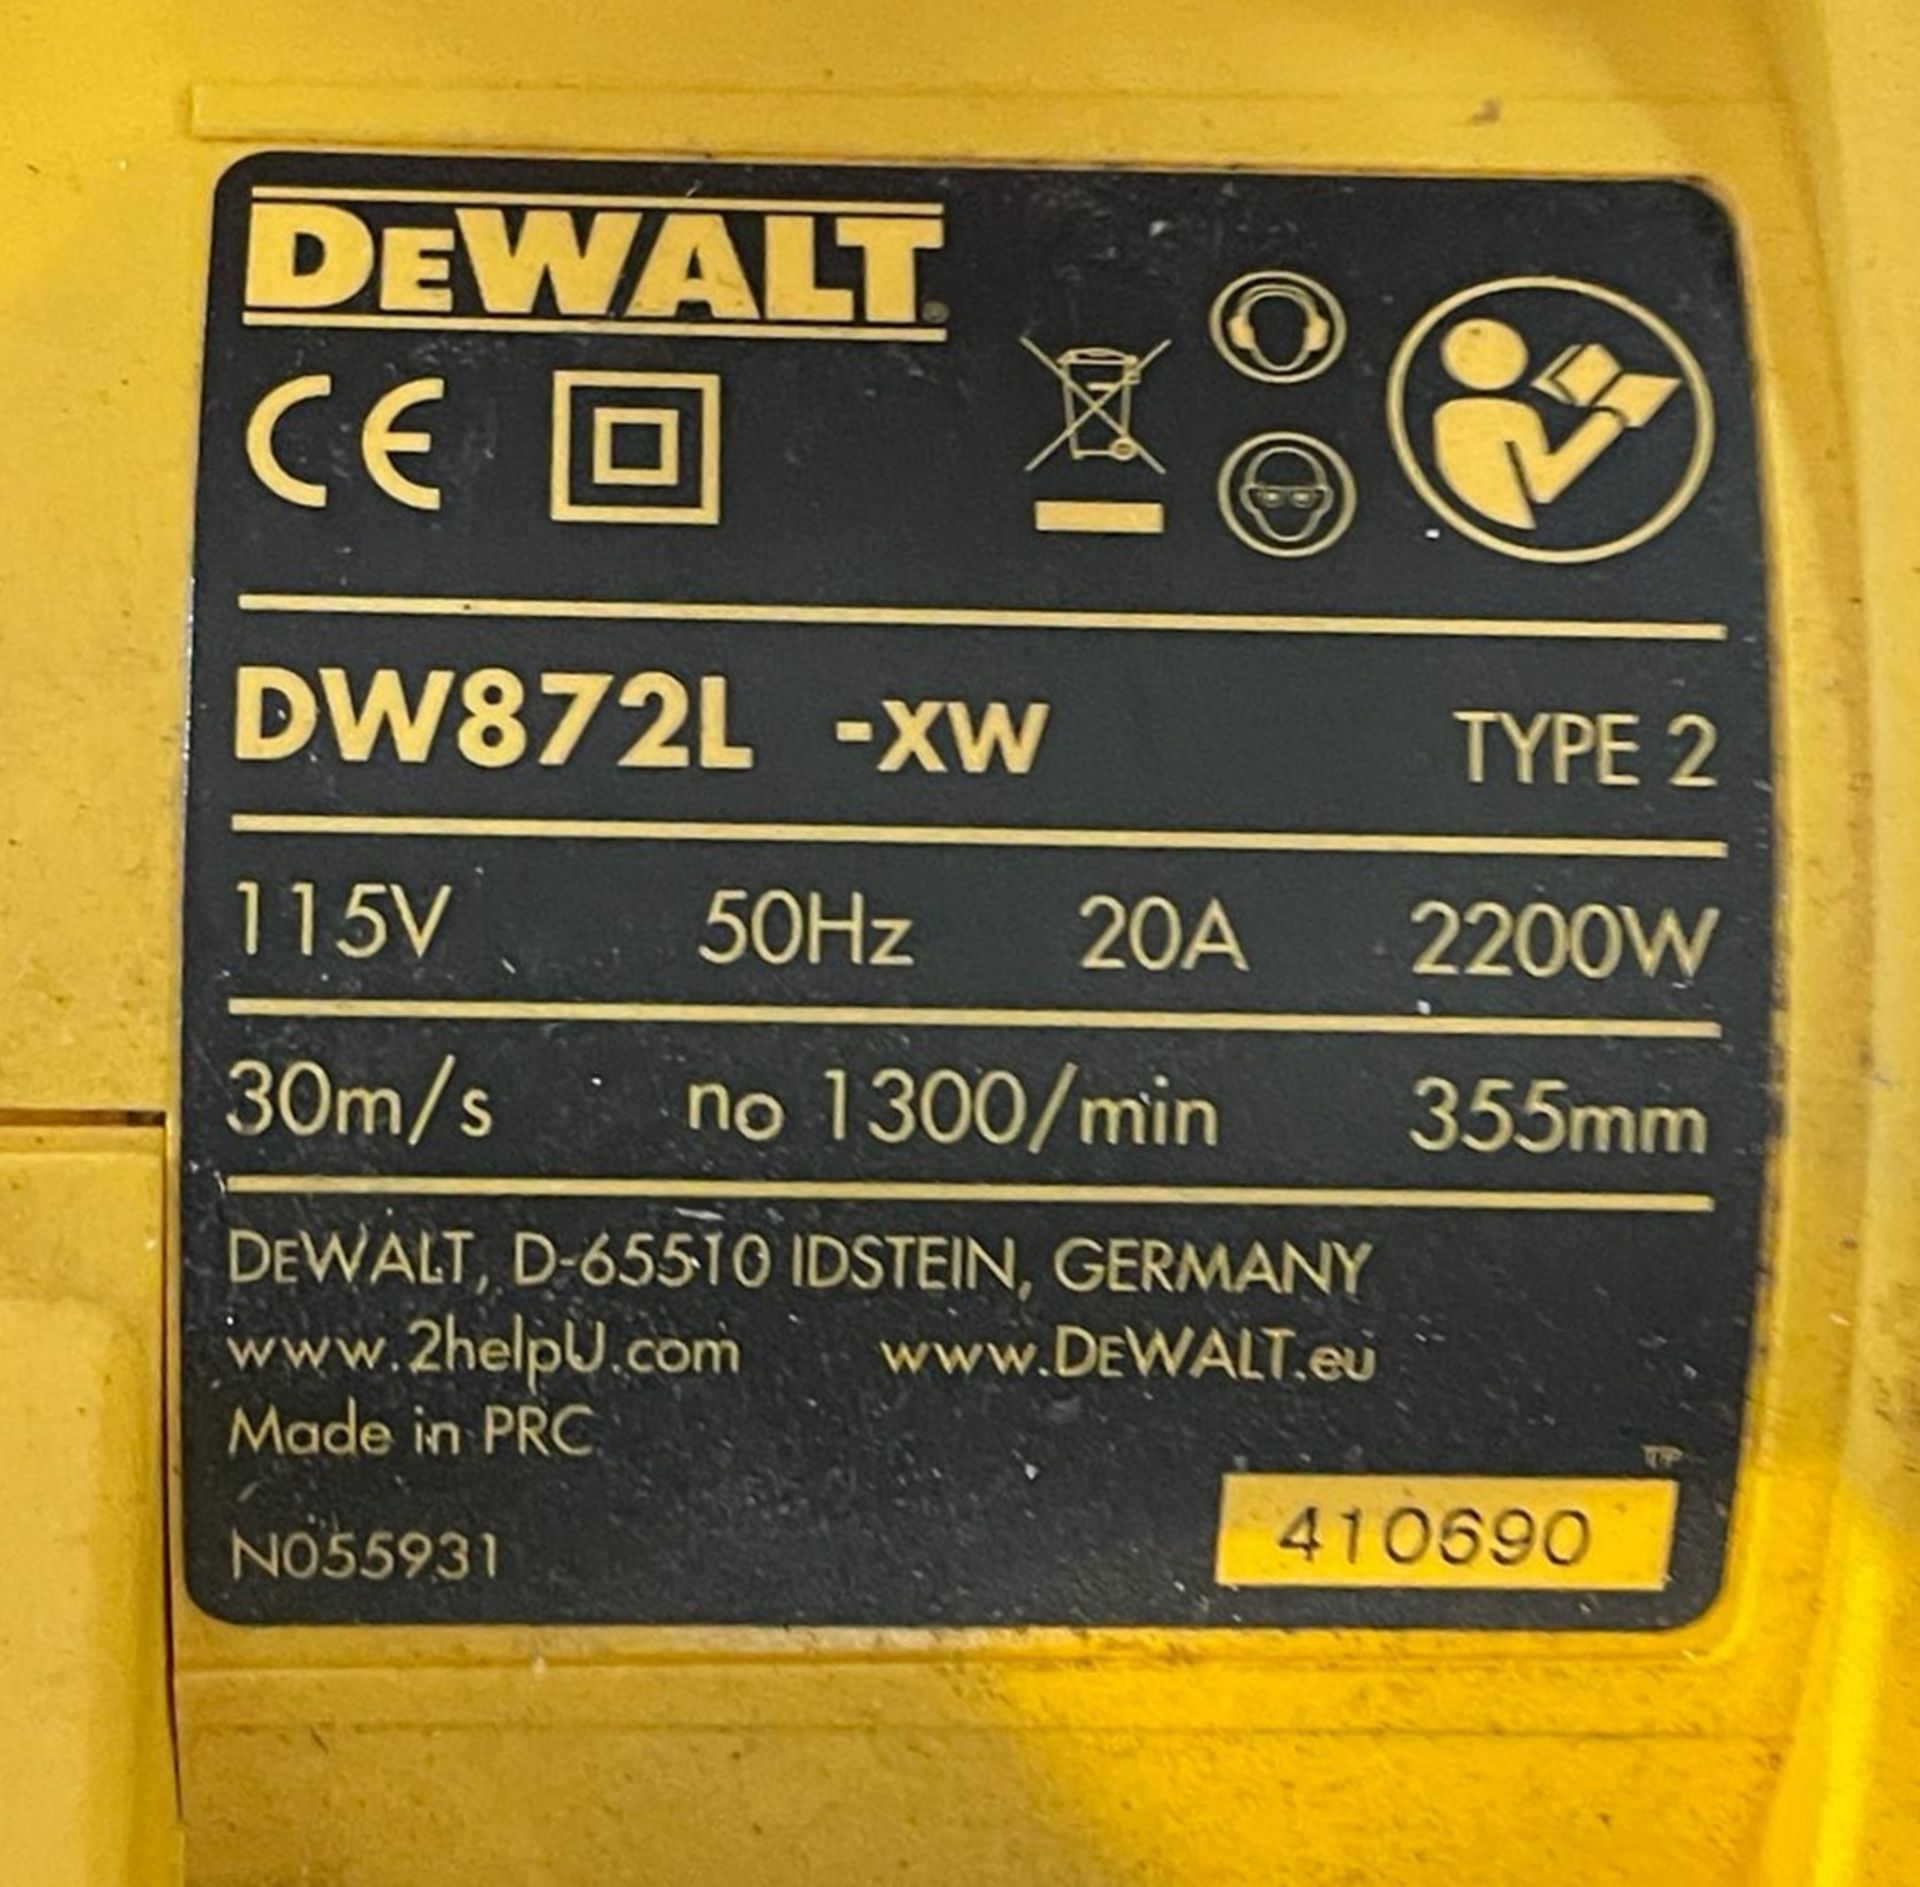 1 x Dewalt Electric 355mm Metal Cutting Chop Saw - 2200w - 110v - Model DW872L-XW - Image 2 of 5